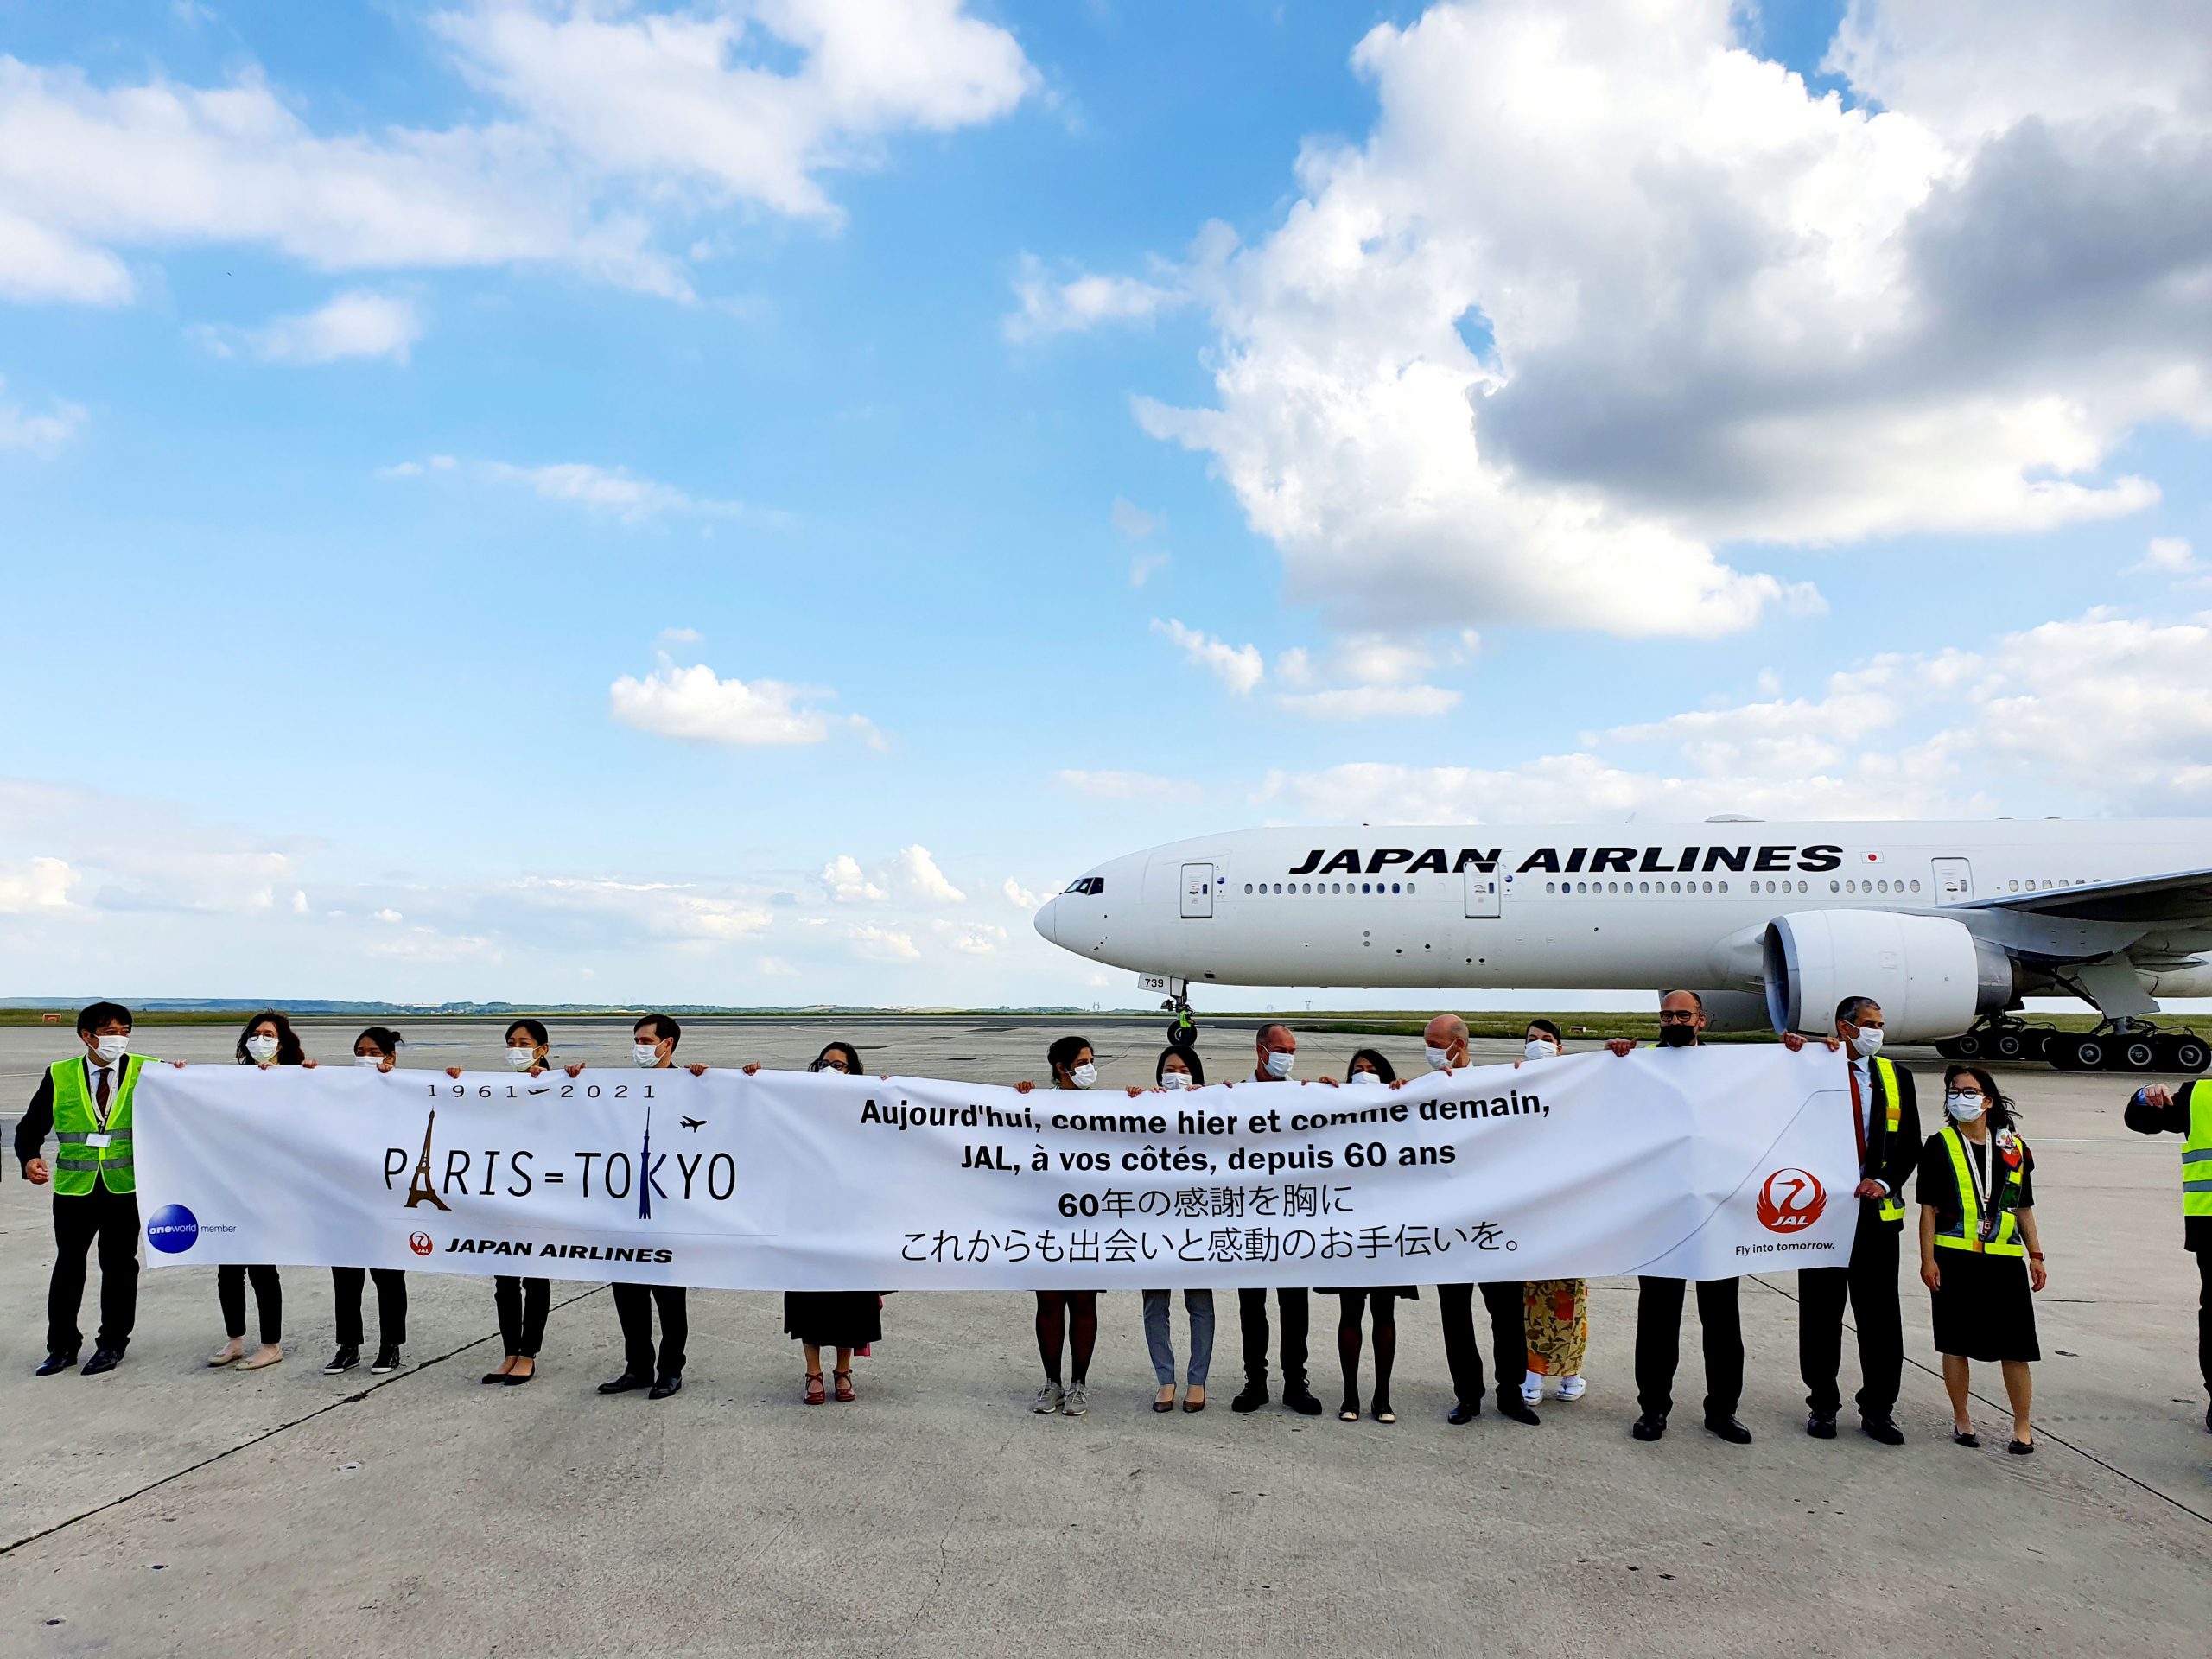 L’Union européenne signe un accord aérien avec le Japon 1 Air Journal